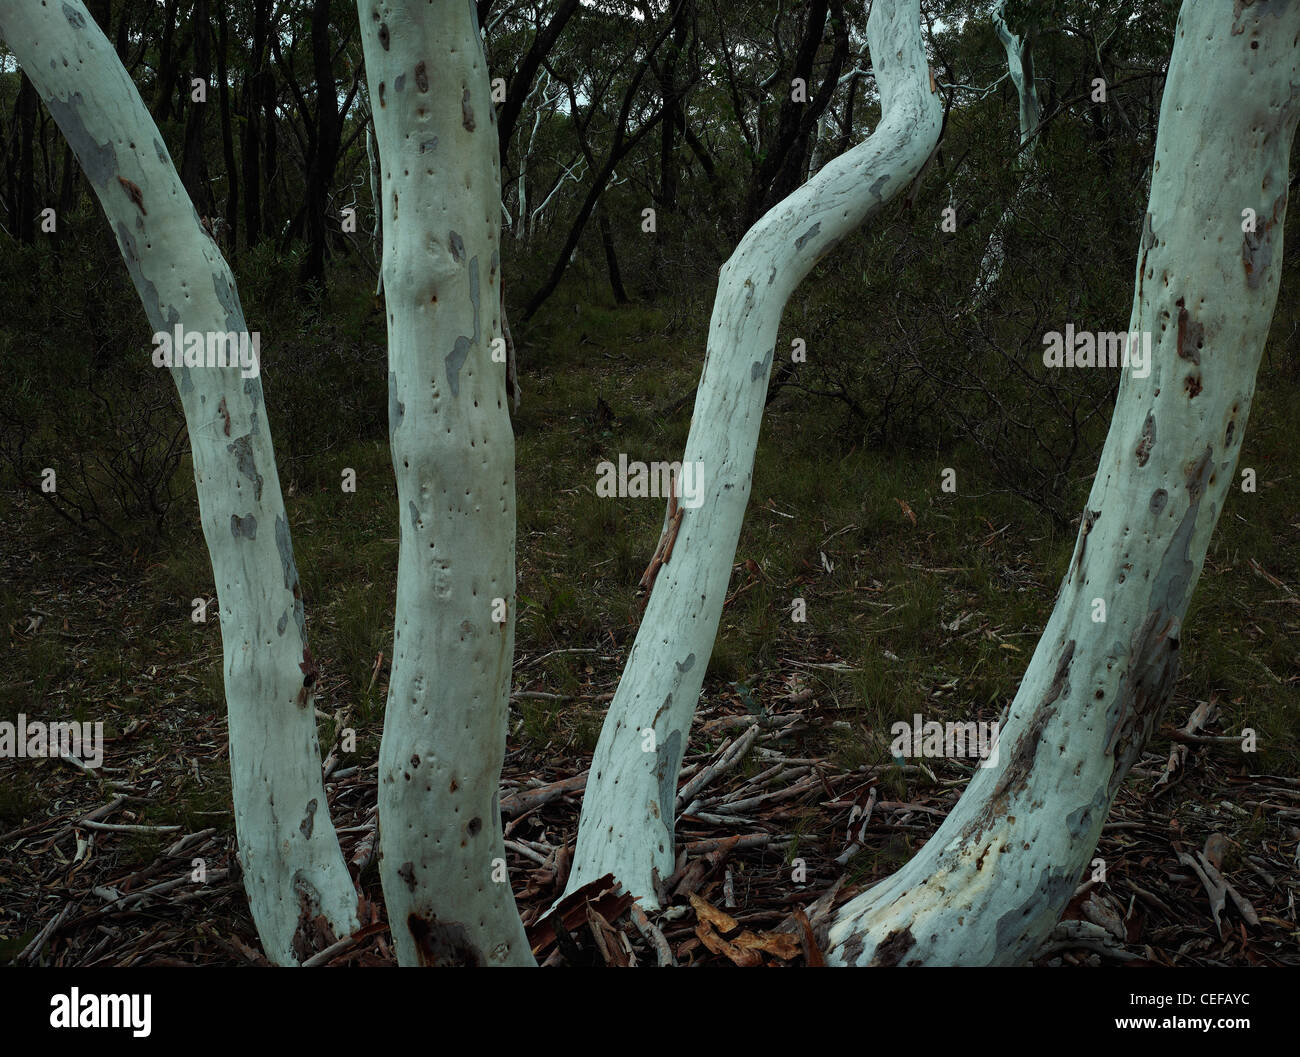 Scribbly gum trunks qui s'est développée à partir de la même base / lignotuber, Morton National Park, NSW Australie Banque D'Images